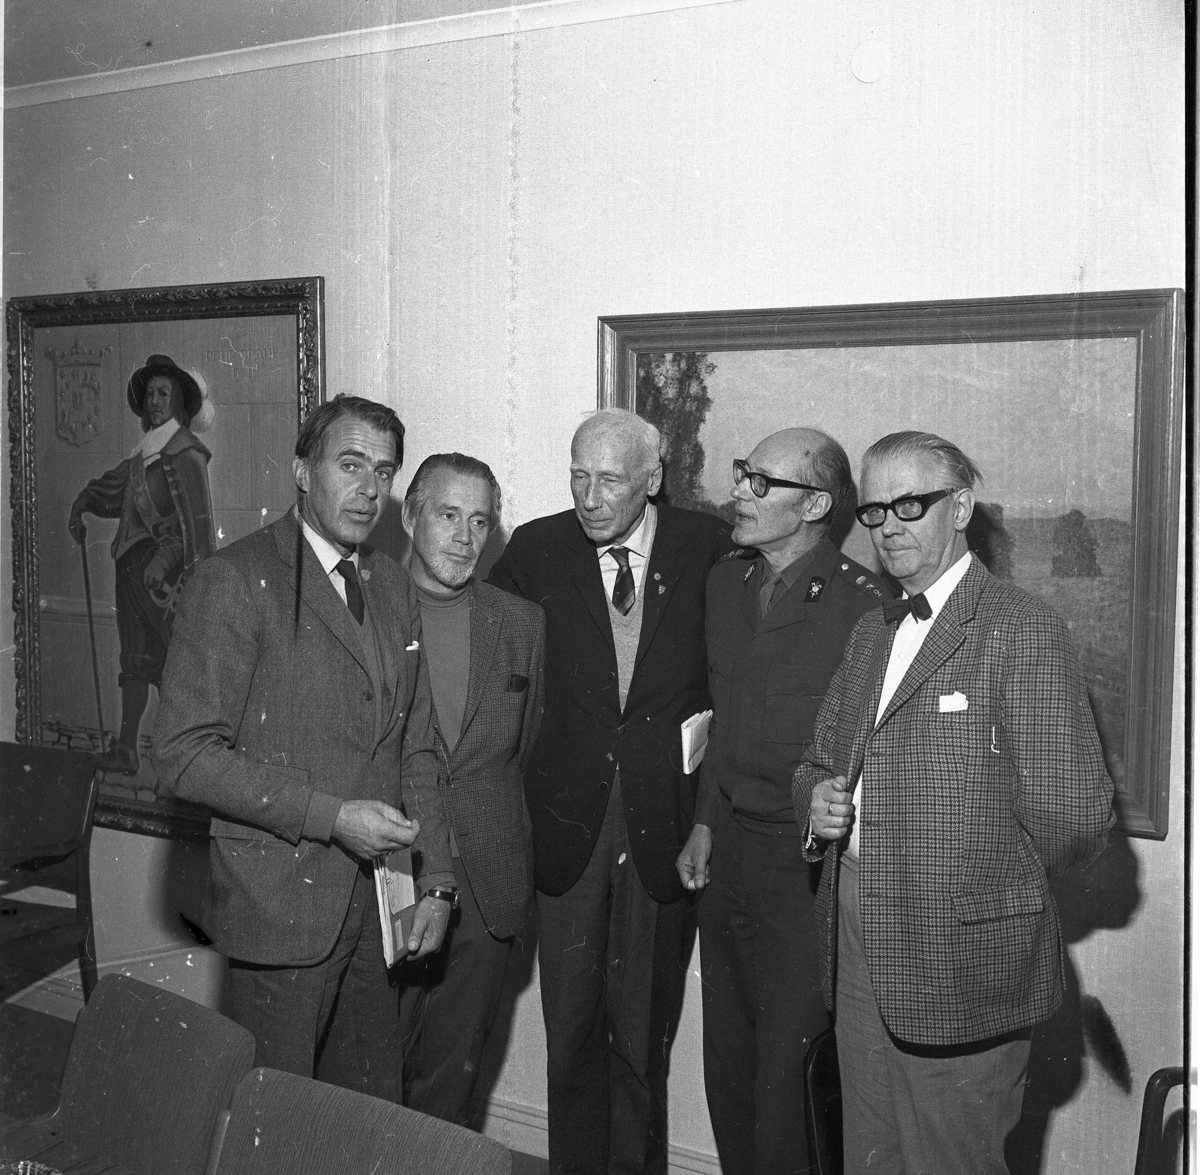 Gruppbild med så kallade Skogstornskommittén. Från vänster: Carl-Wilhelm Lothigius, Bengt Palmberg, Torsten Tegnér, Carl Lewenhaupt och Alvar Näslund.